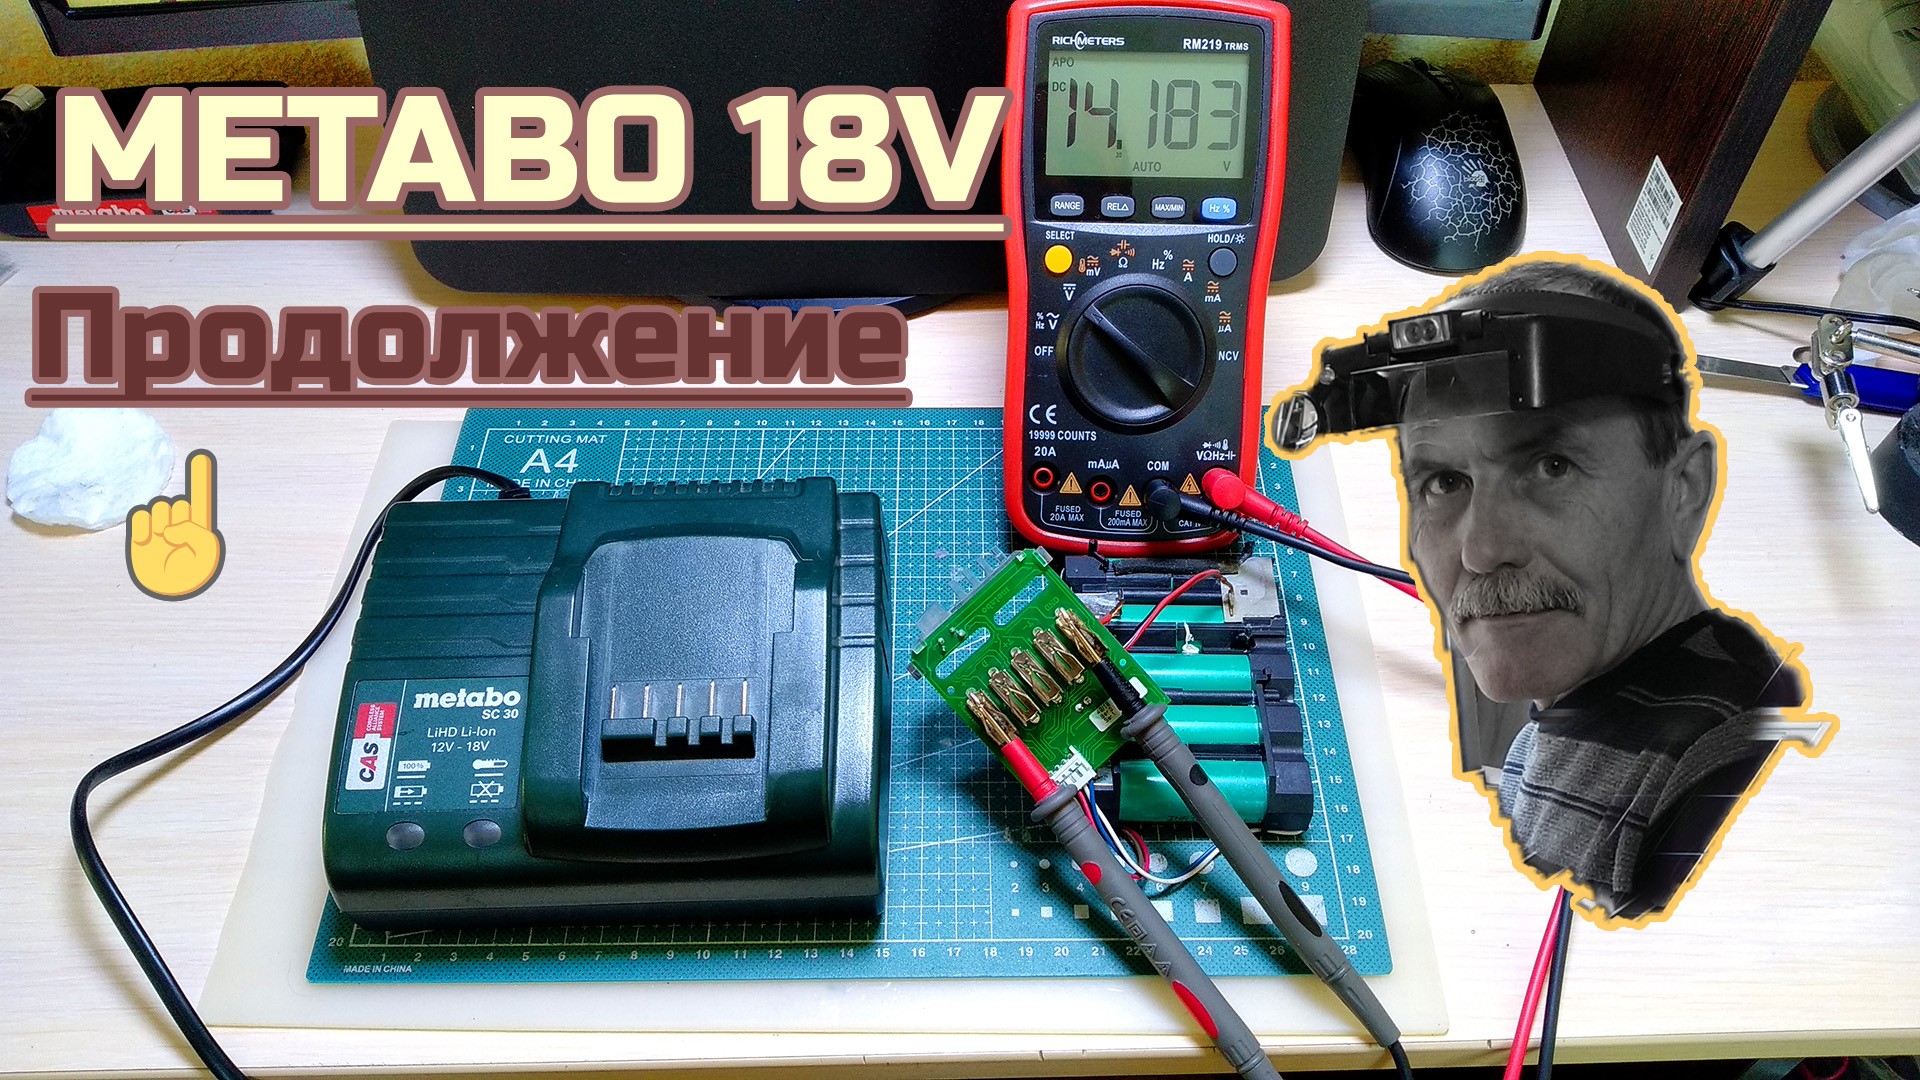 Metabo 18V продолжение ремонта Li-Ion батареи